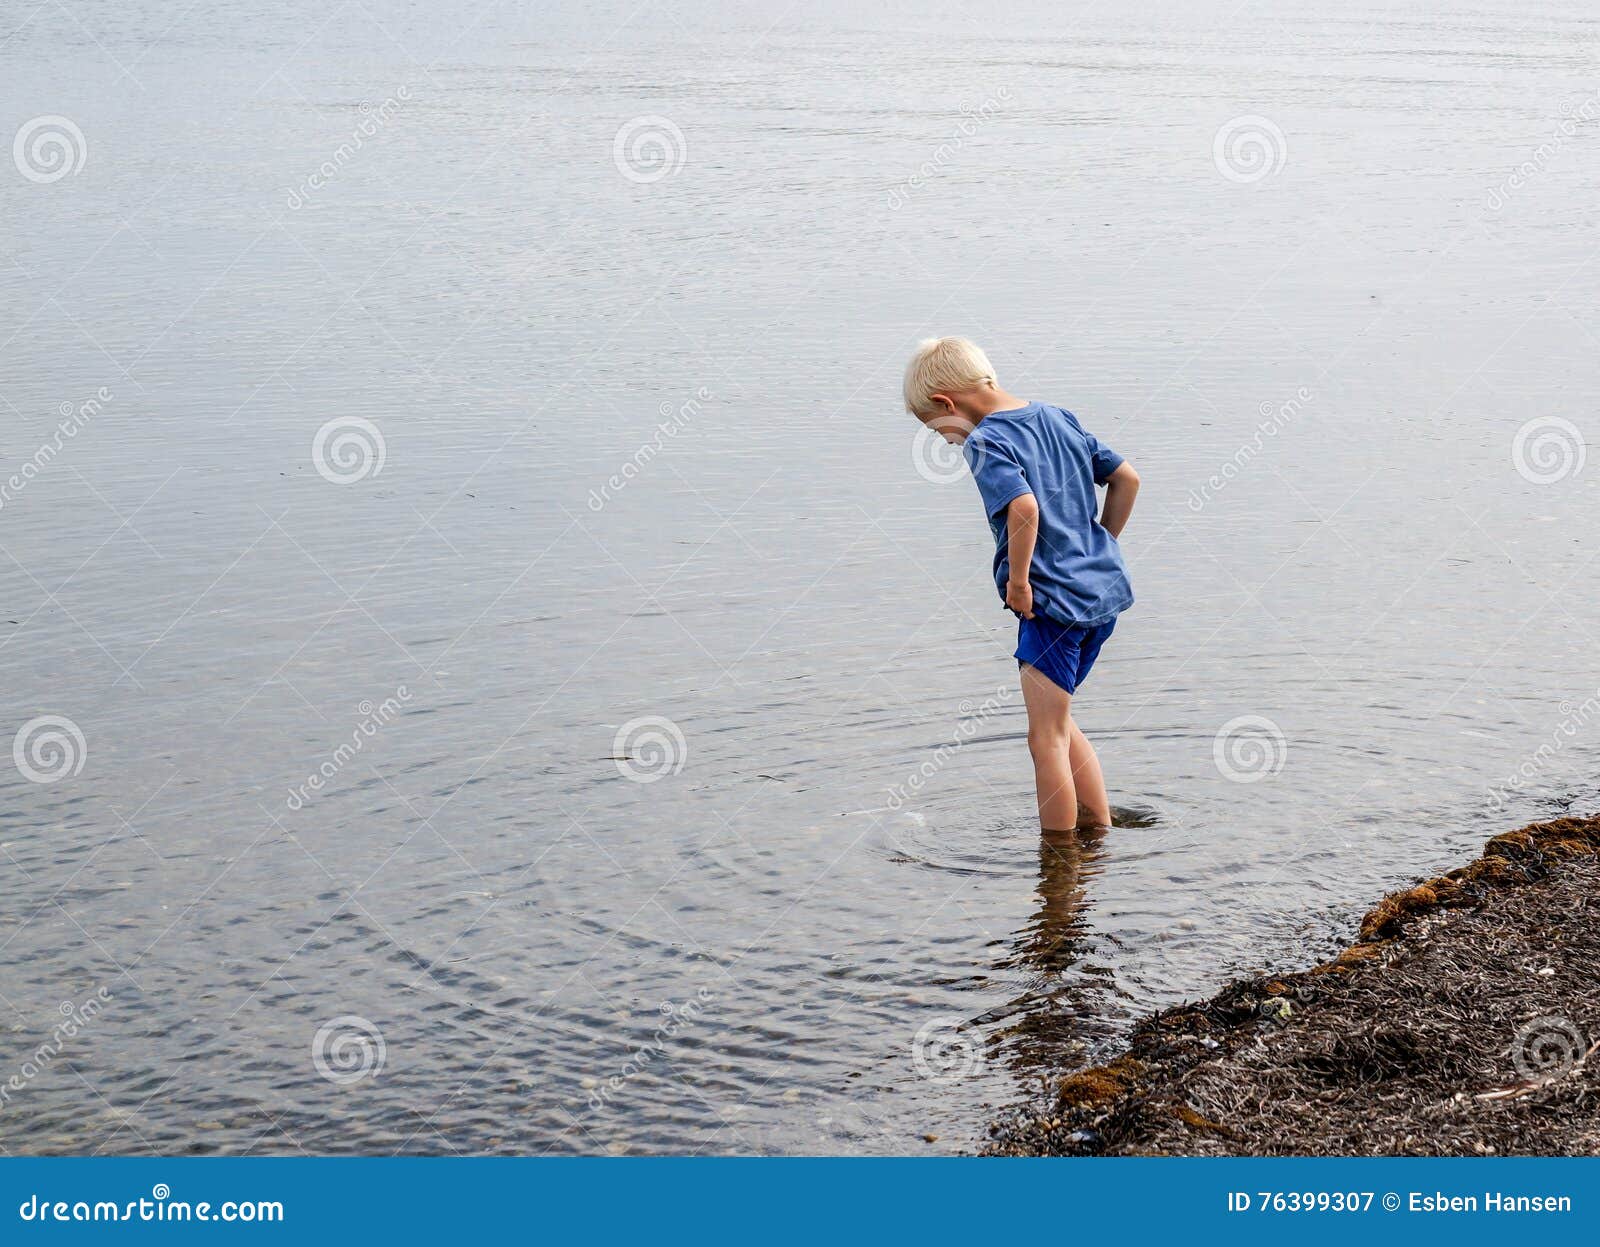 Вода которую мальчик несет. Мальчик идет по воде. Мальчик пописал в море. Пописать в море. Писает в море.